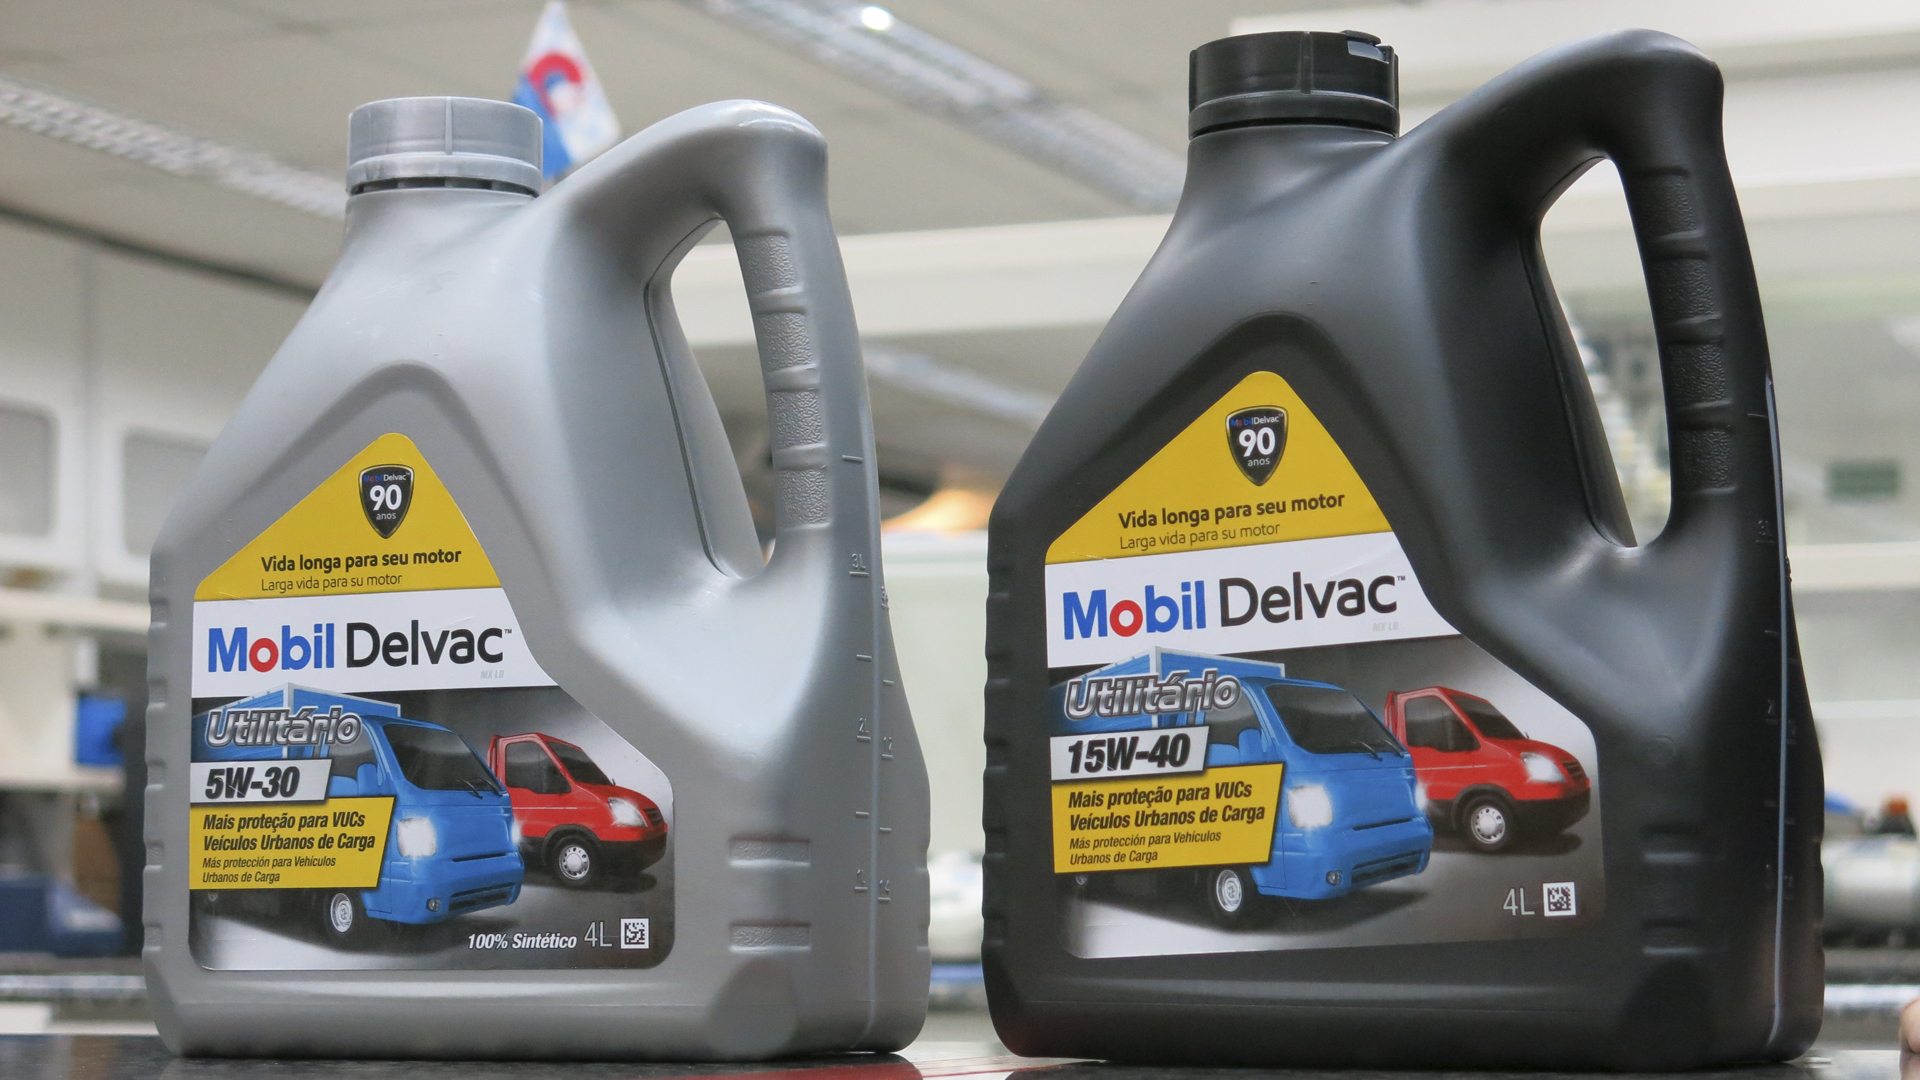 Mobil Delvac lança óleo lubrificante para pequenos caminhões